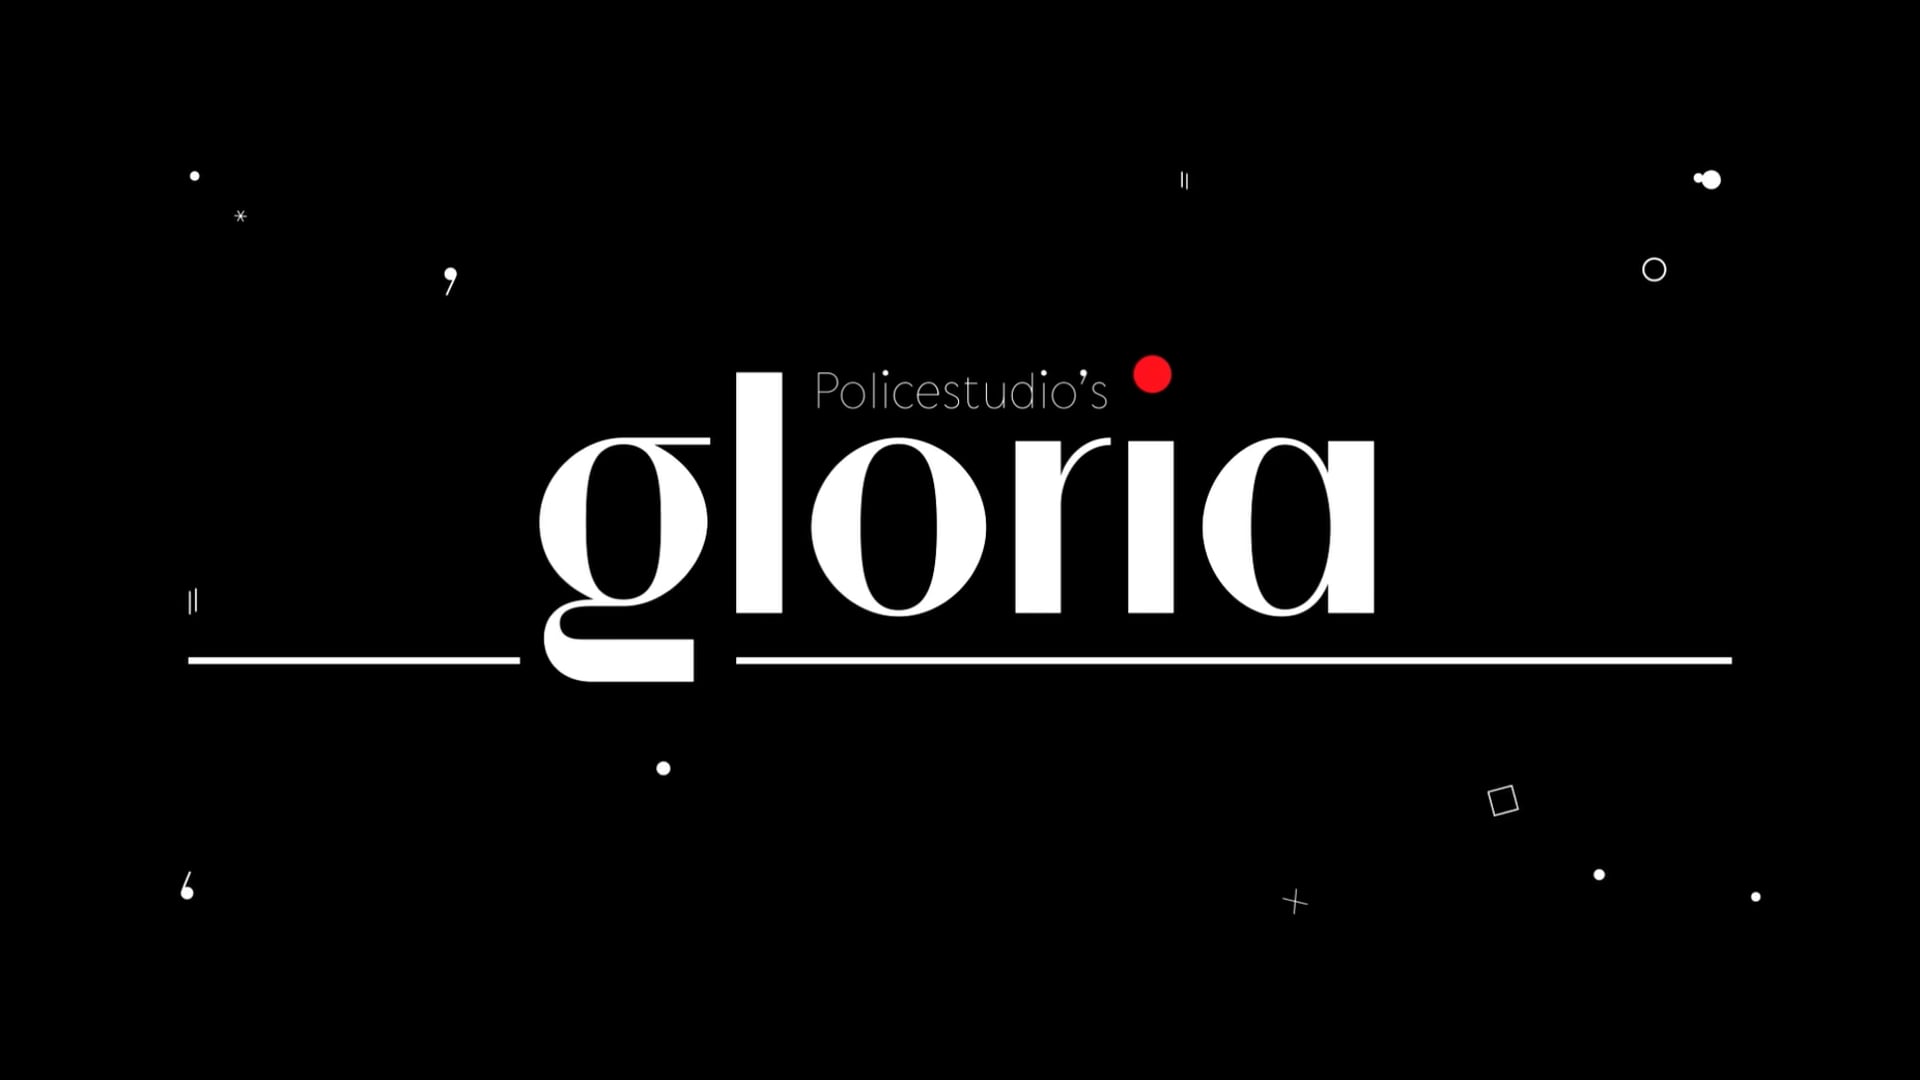 Policestudio's Gloria Animated Type Specimen.